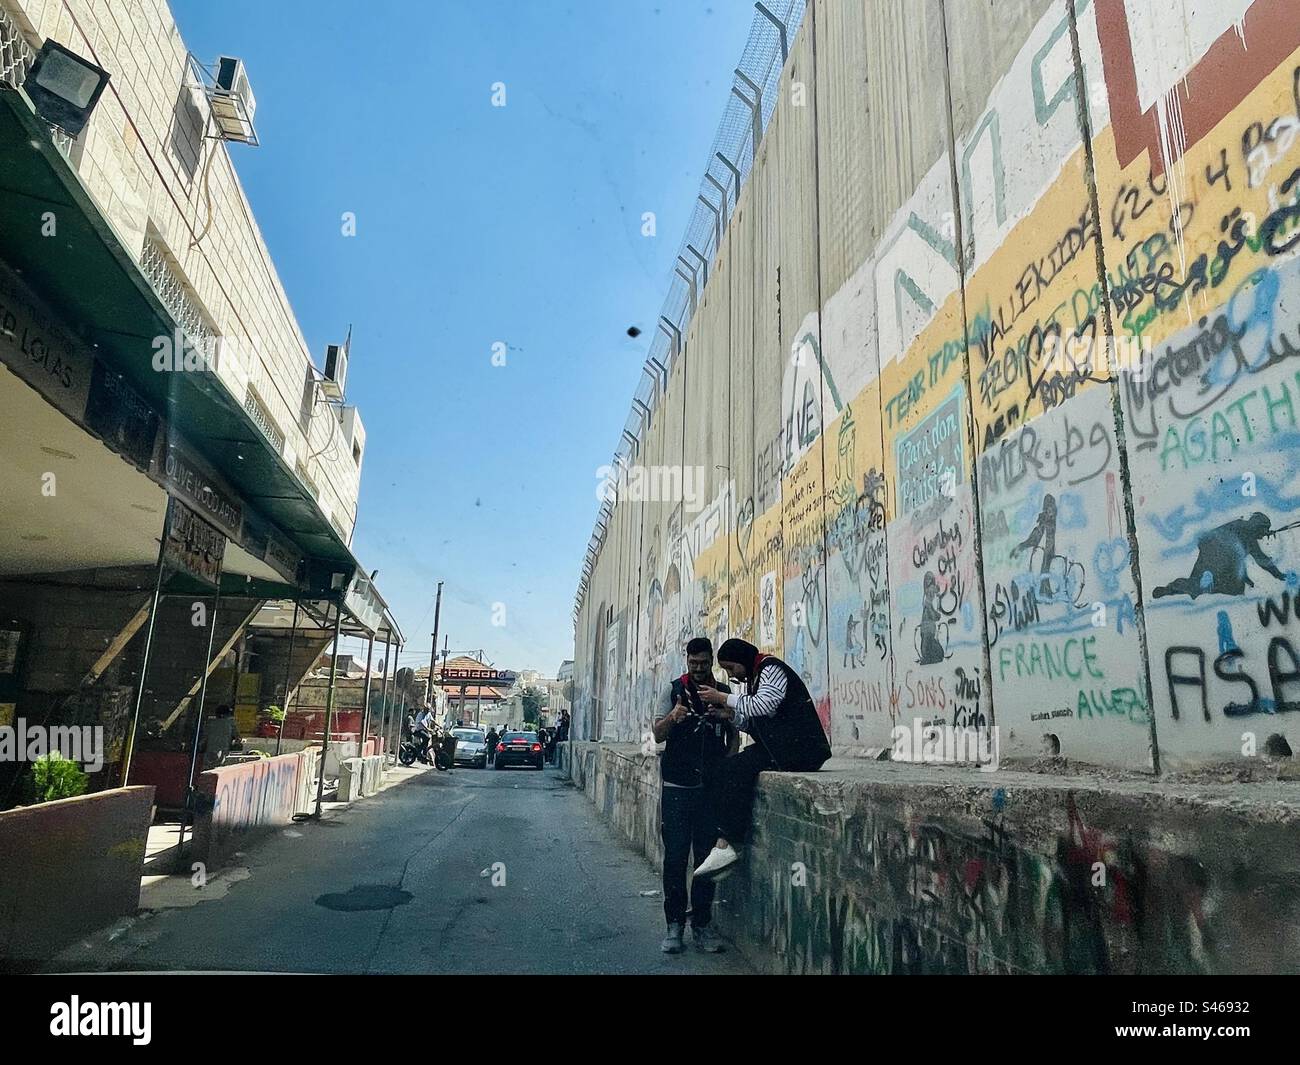 Murales che decorano la barriera di sicurezza israeliana a Betlemme, in Palestina. Foto Stock